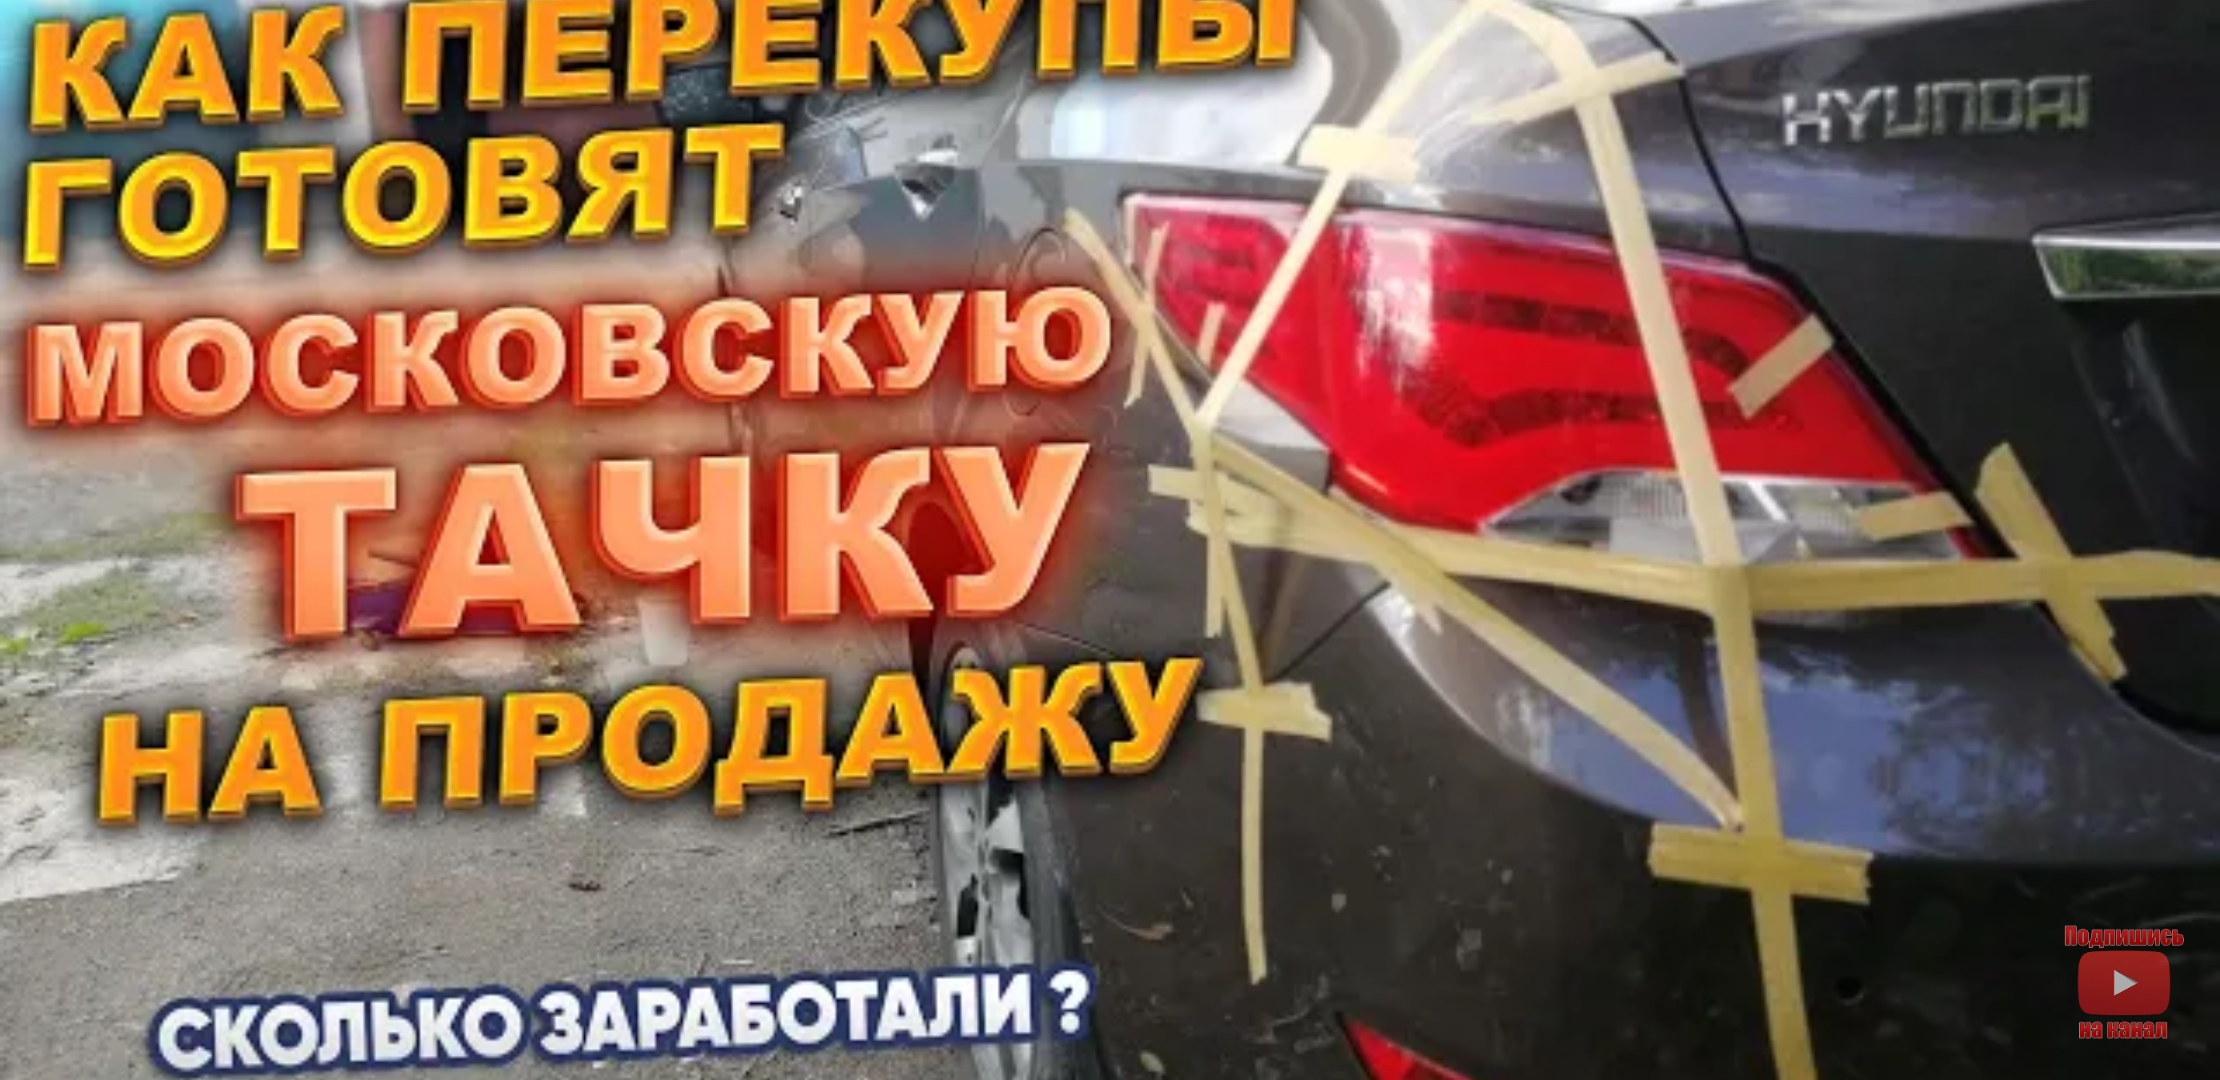 Анонс видео-теста Как перекупы готовят московскую тачку на продажу. Сколько заработали?